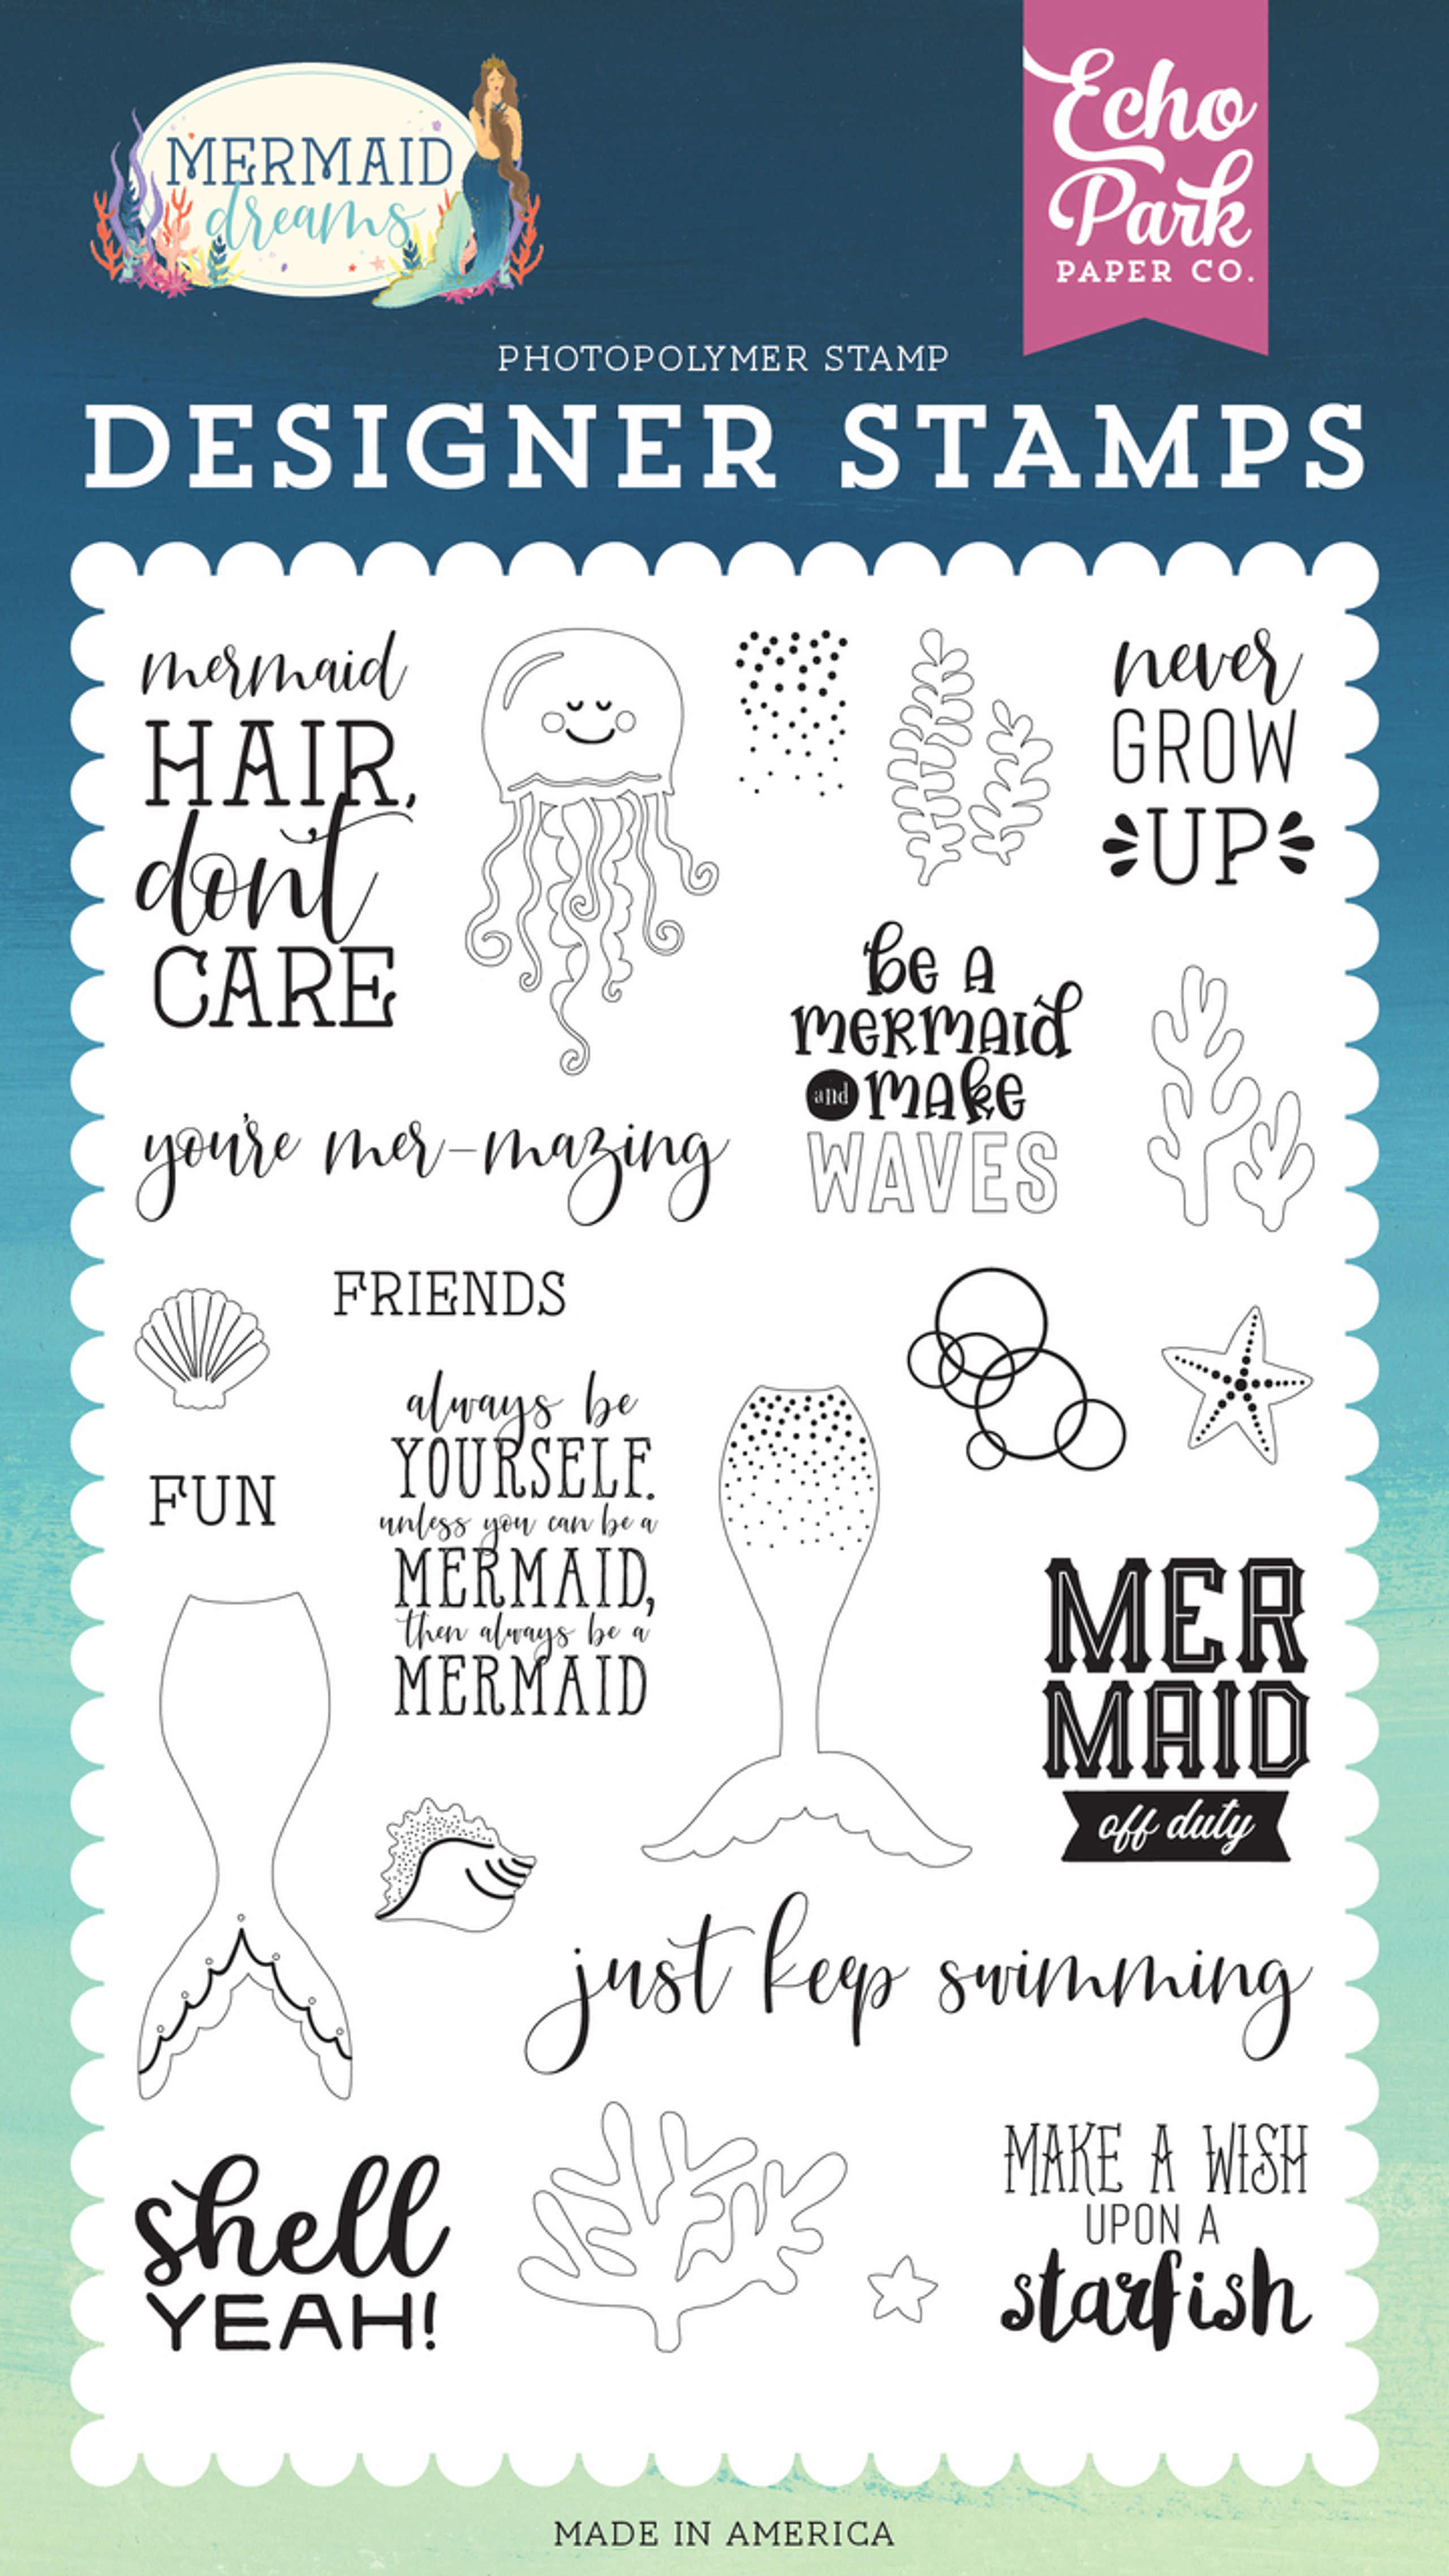 Mermaid Dreams: Be A Mermaid Stamp Set